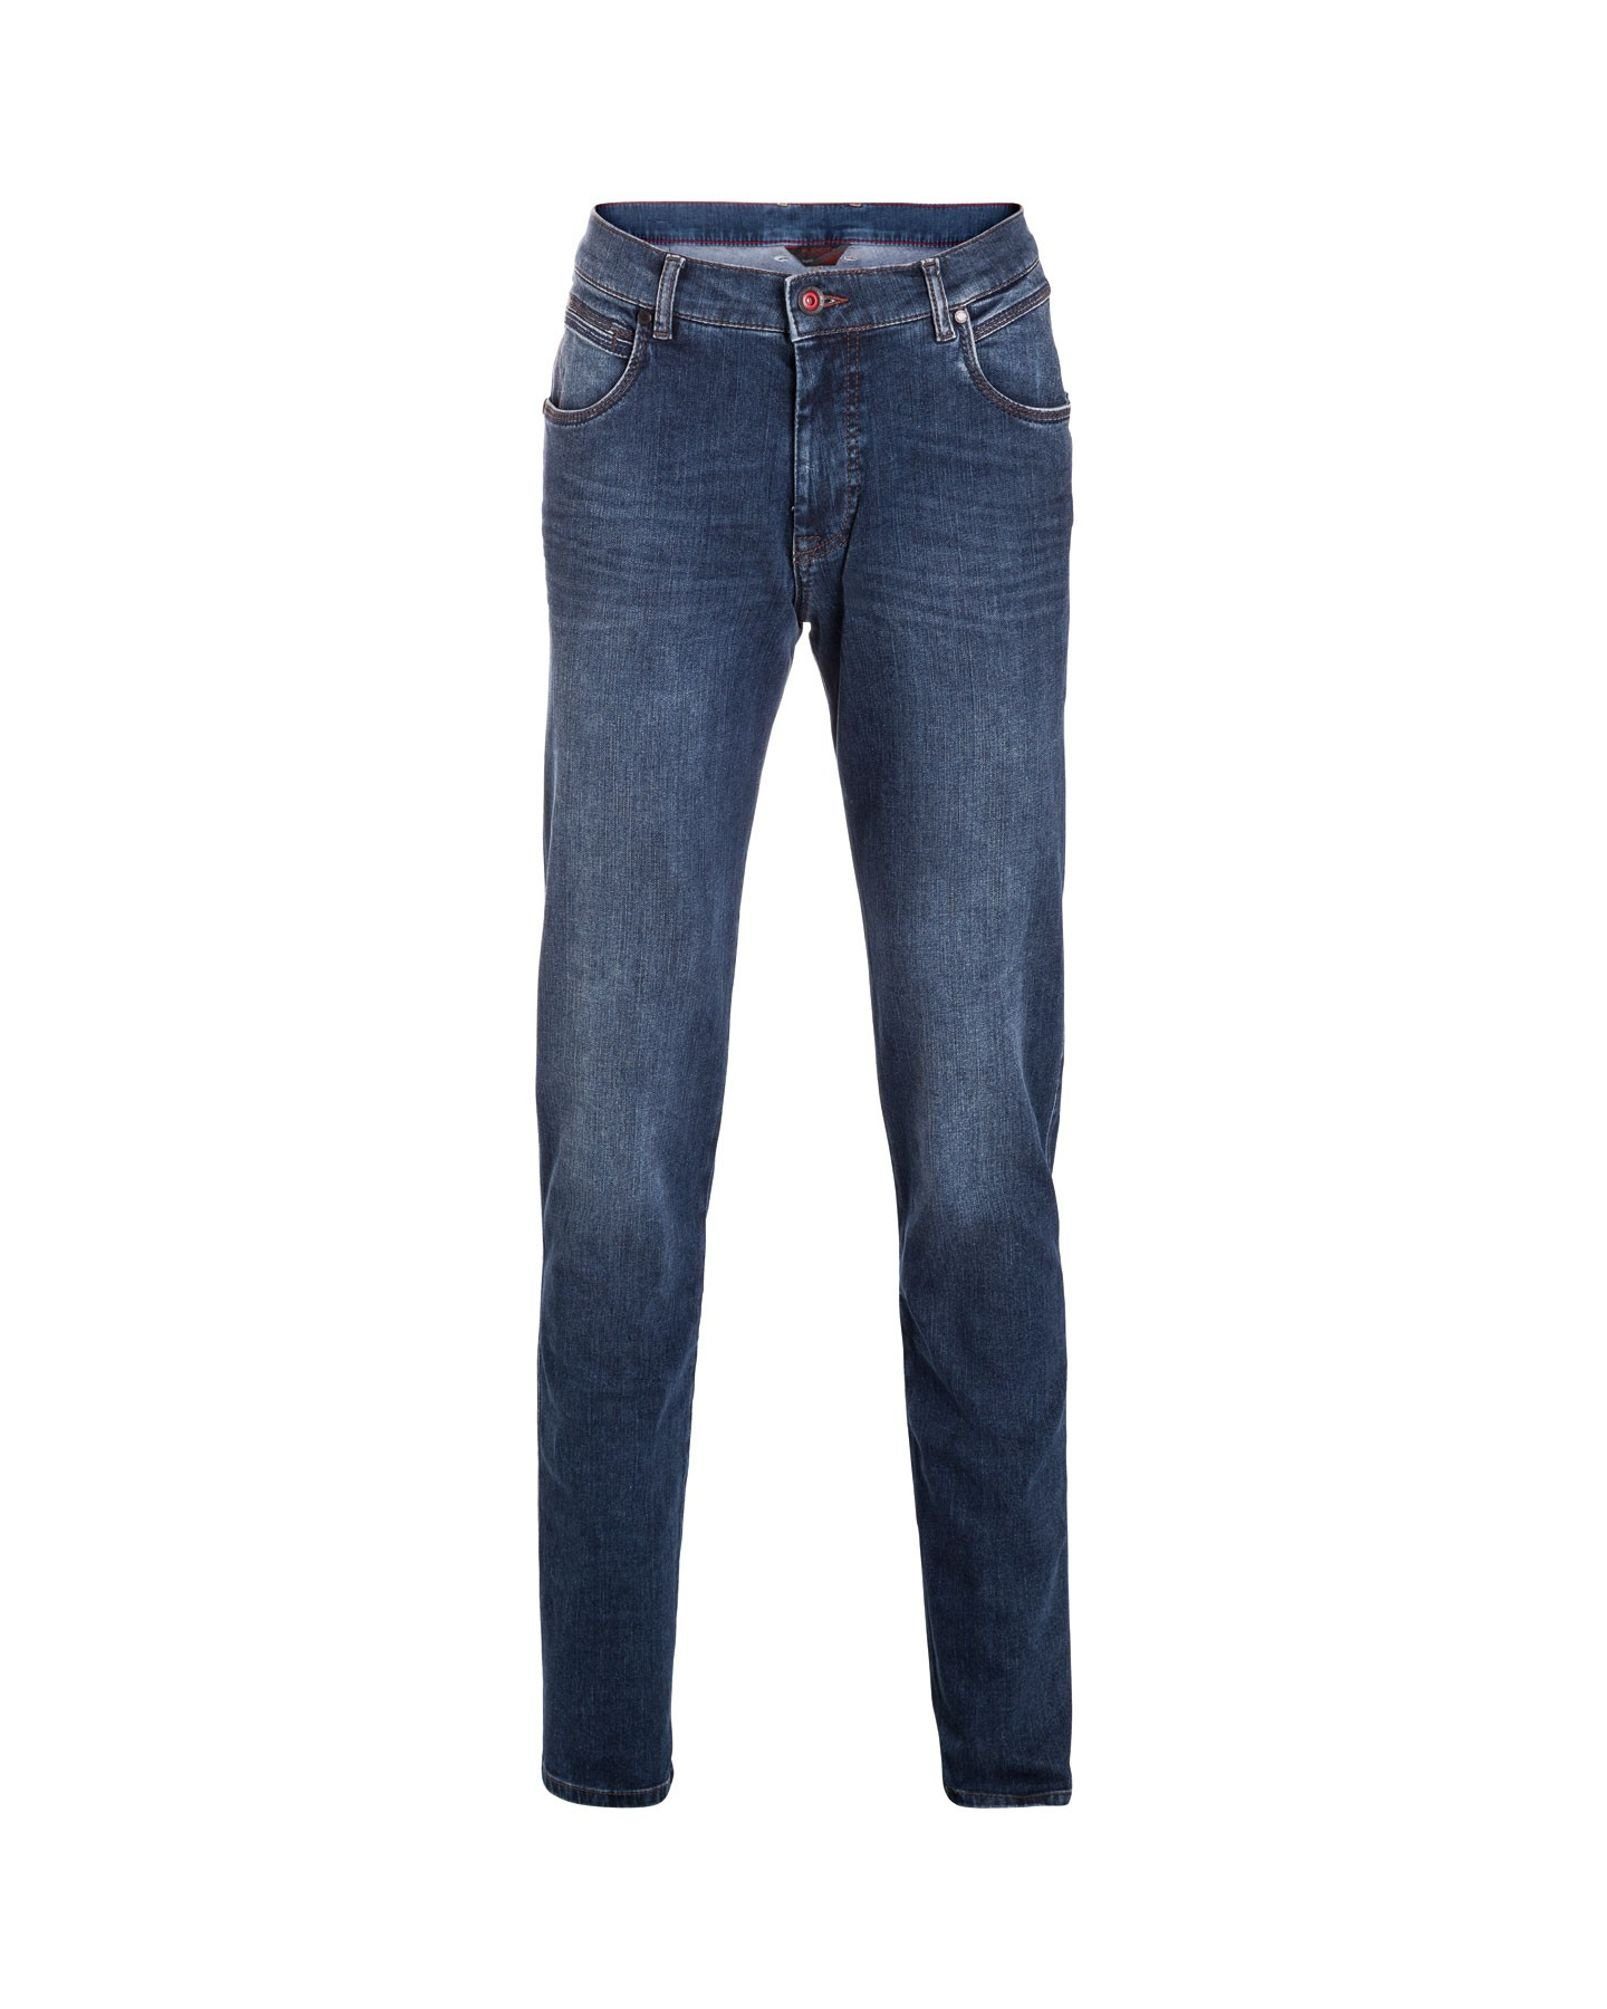 [Kostenloser Versand für alle Artikel] bugatti 5-Pocket-Jeans 5 Pocket Jeans Toronto Blue D (375) Stone